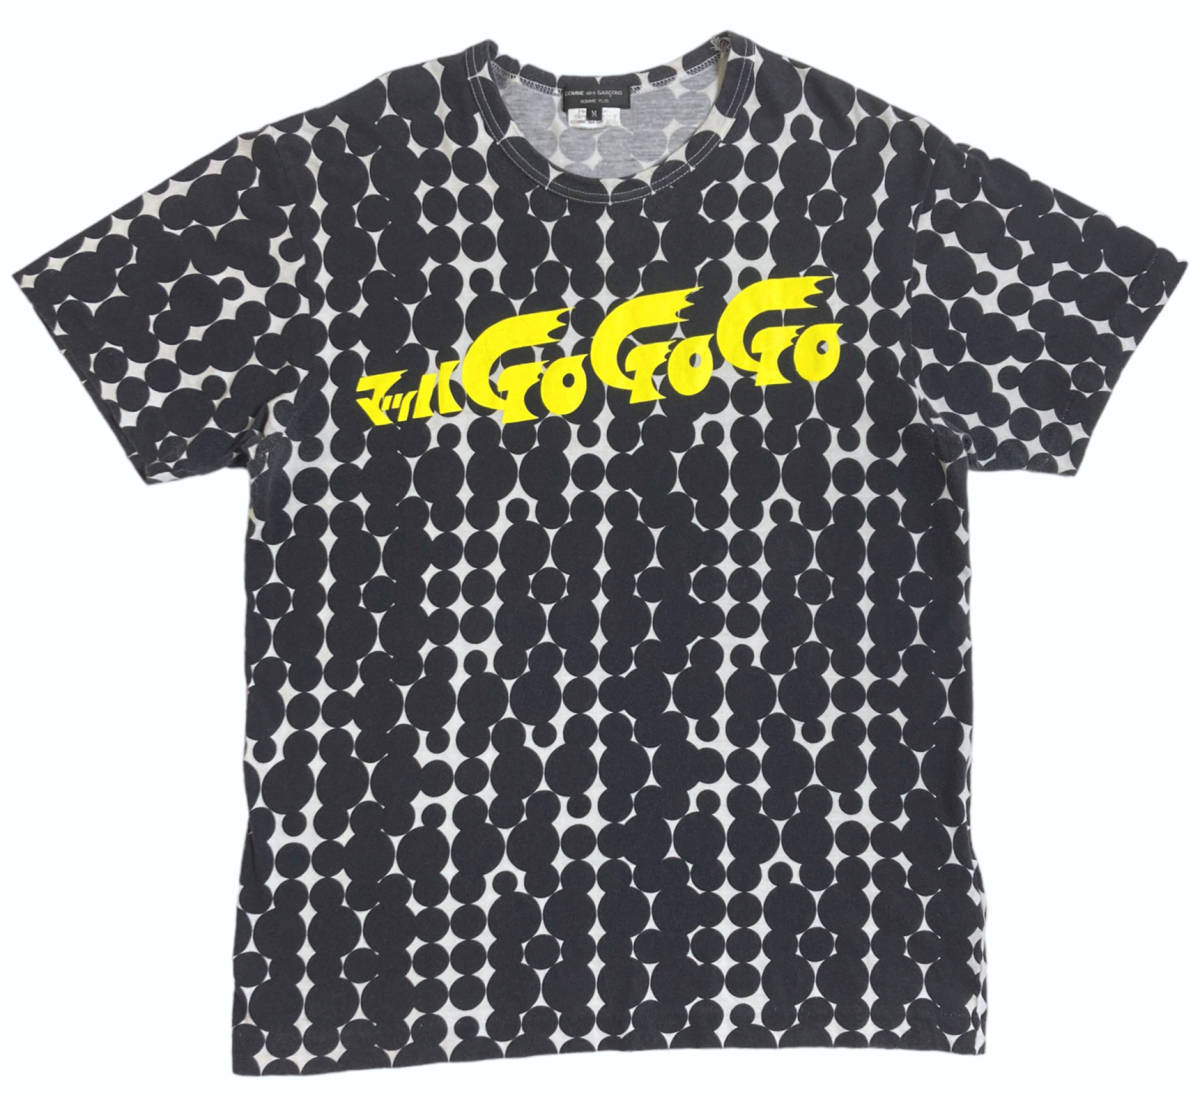 00s マッハGOGOGO ギャルソン オムプリュス Tシャツ COMME des GARCONS HOMME PLUS M AD2008 アーカイブ タツノコプロ